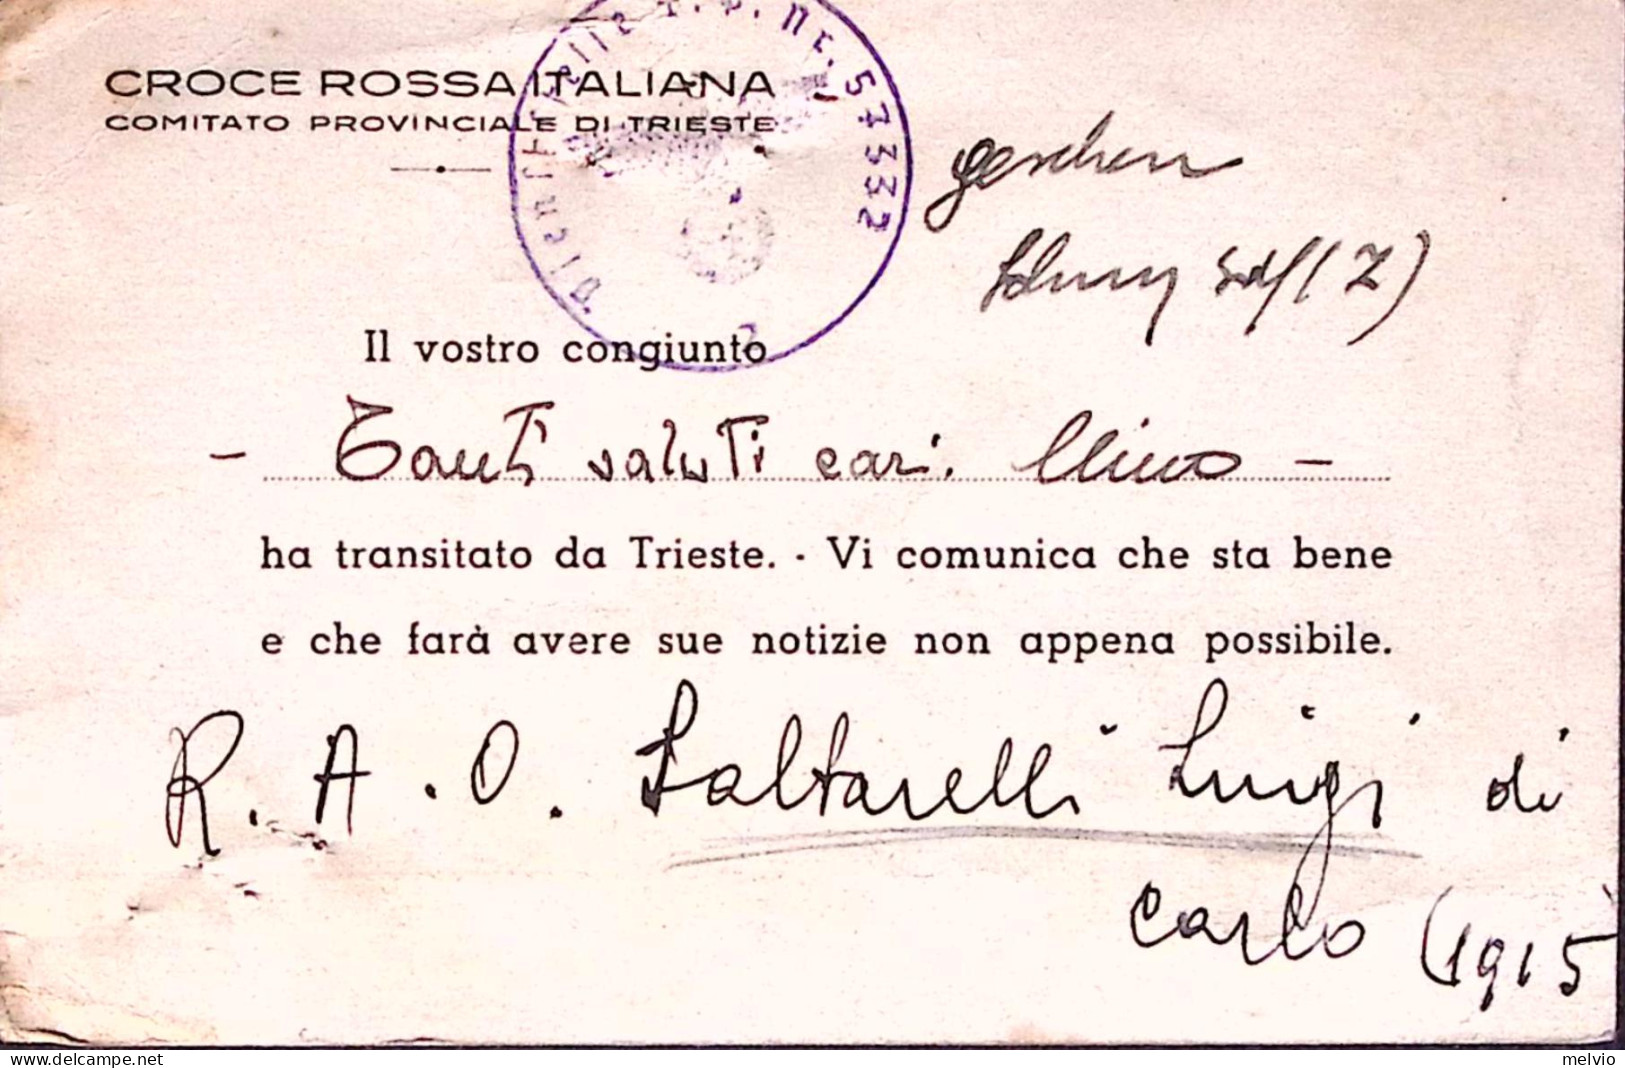 1936-ERITREA Ordinaria Singolo E Coppia C.50 Su Busta Via Aerea Asmara (28.5) - Erythrée